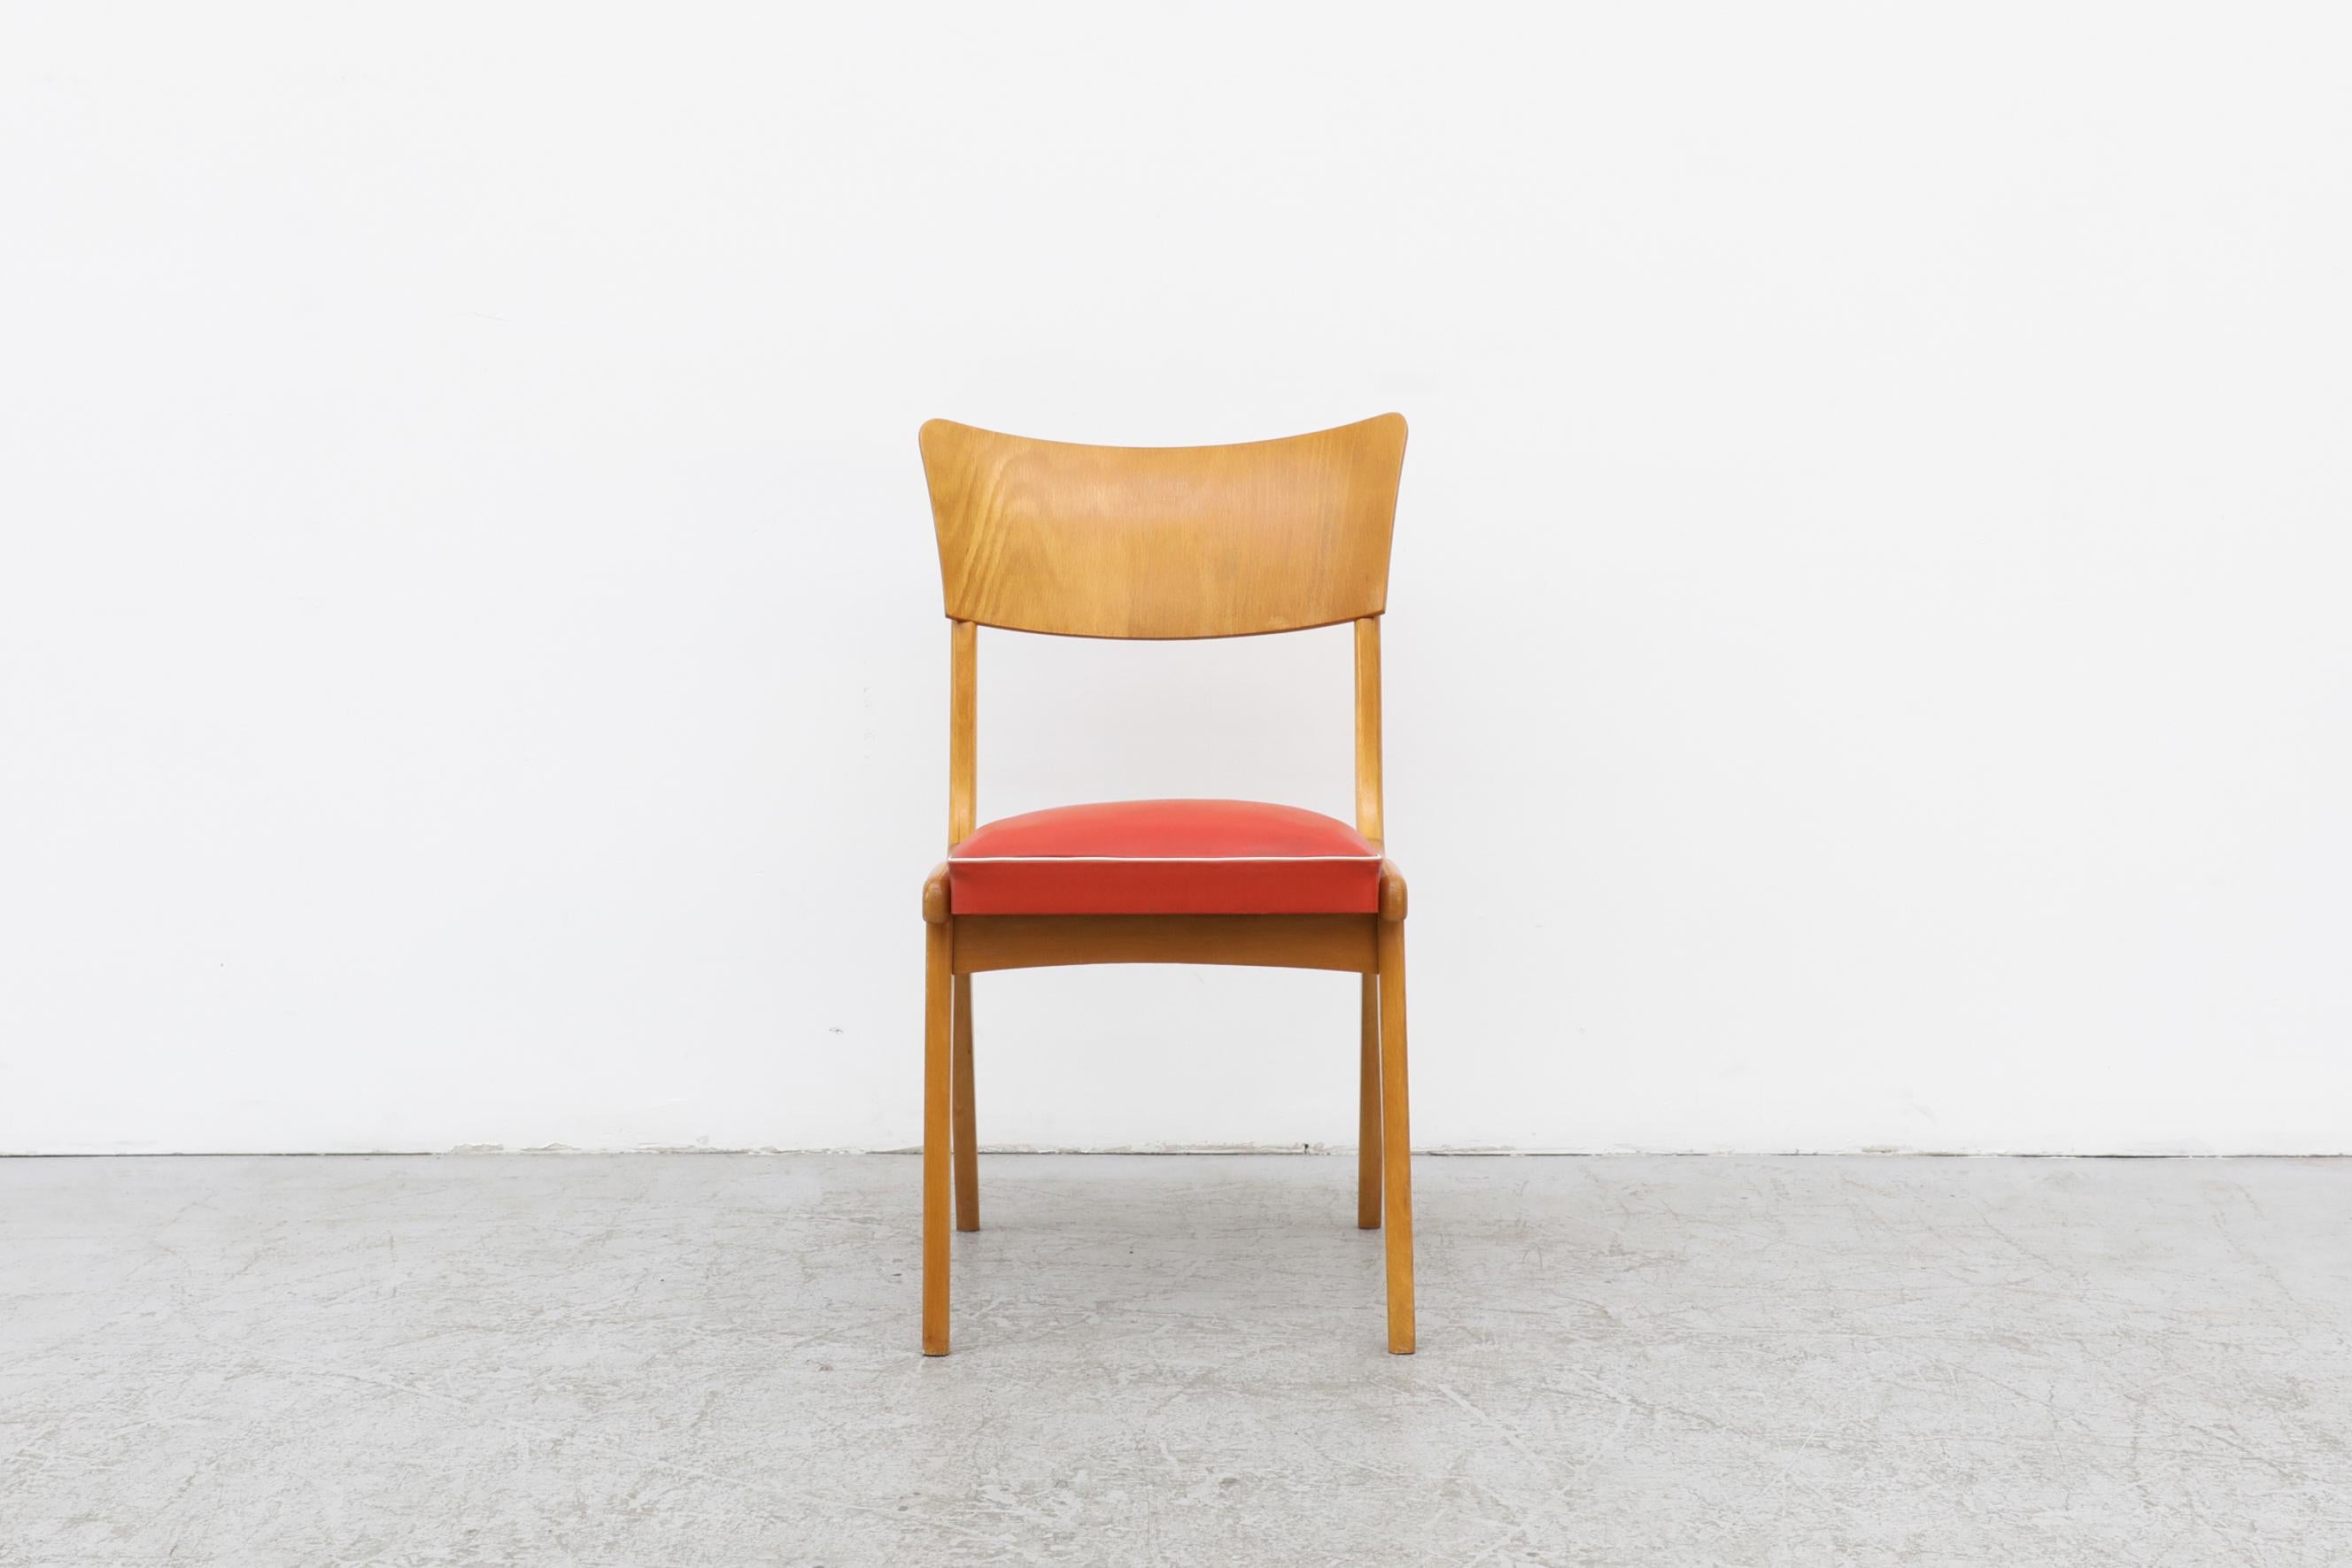 Midcentury-Stuhl mit geschwungener Rückenlehne, blondem Gestell und einem bezaubernden Sitz aus rotem Vinyl mit weißer Zierleiste. Im Originalzustand mit sichtbaren Oberflächenkratzern auf dem Holz und einer Patina auf dem Vinyl. Die Abnutzung